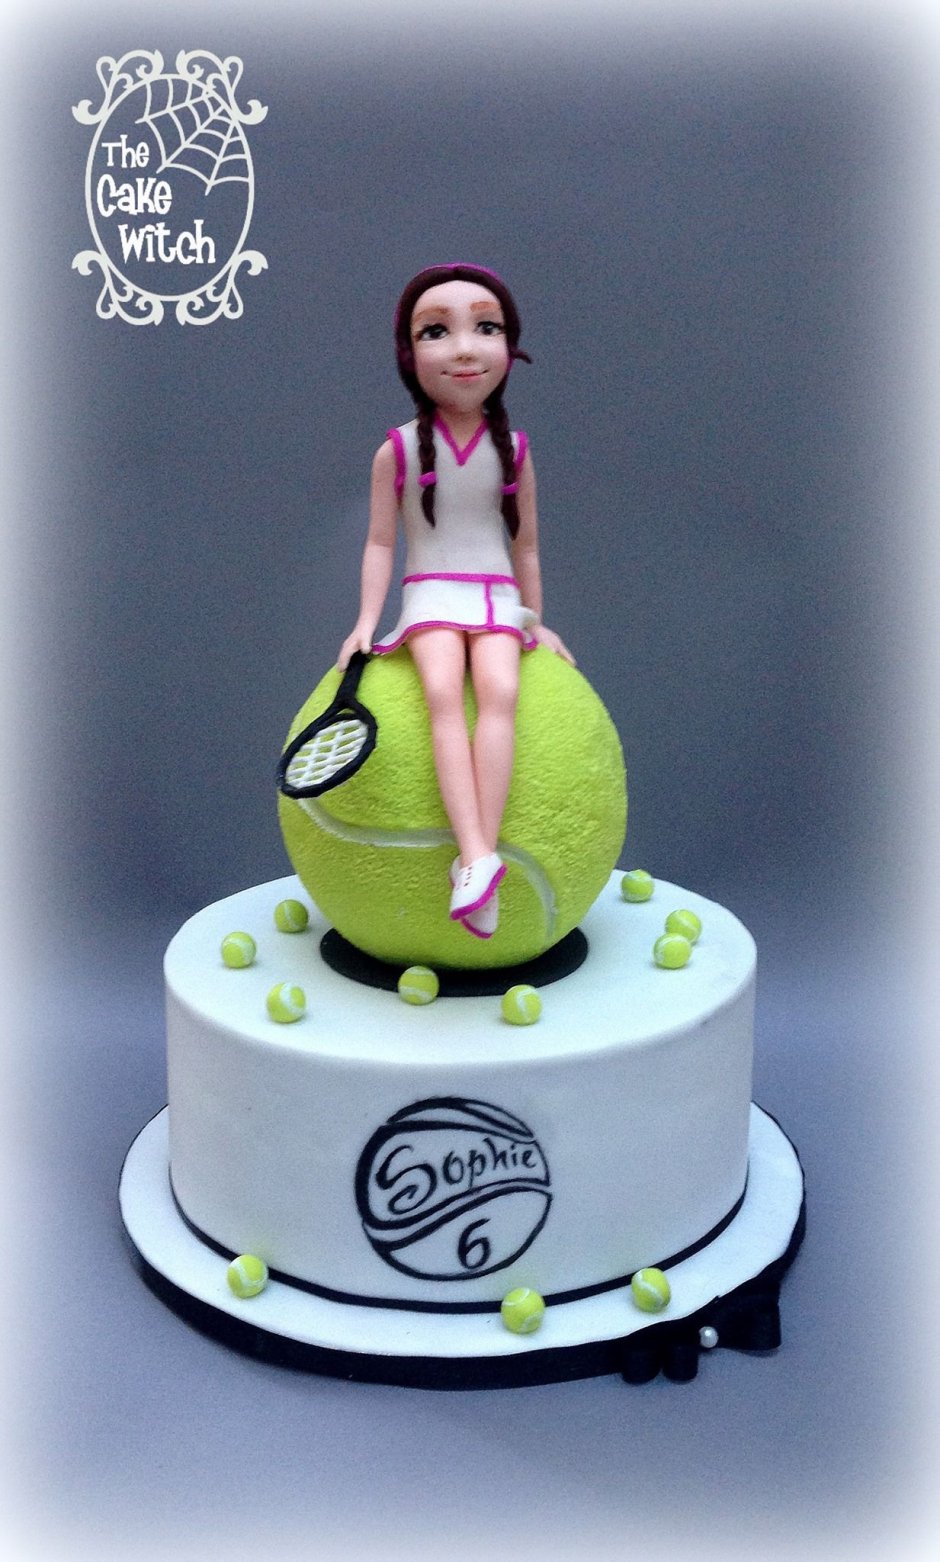 Торт «теннис»